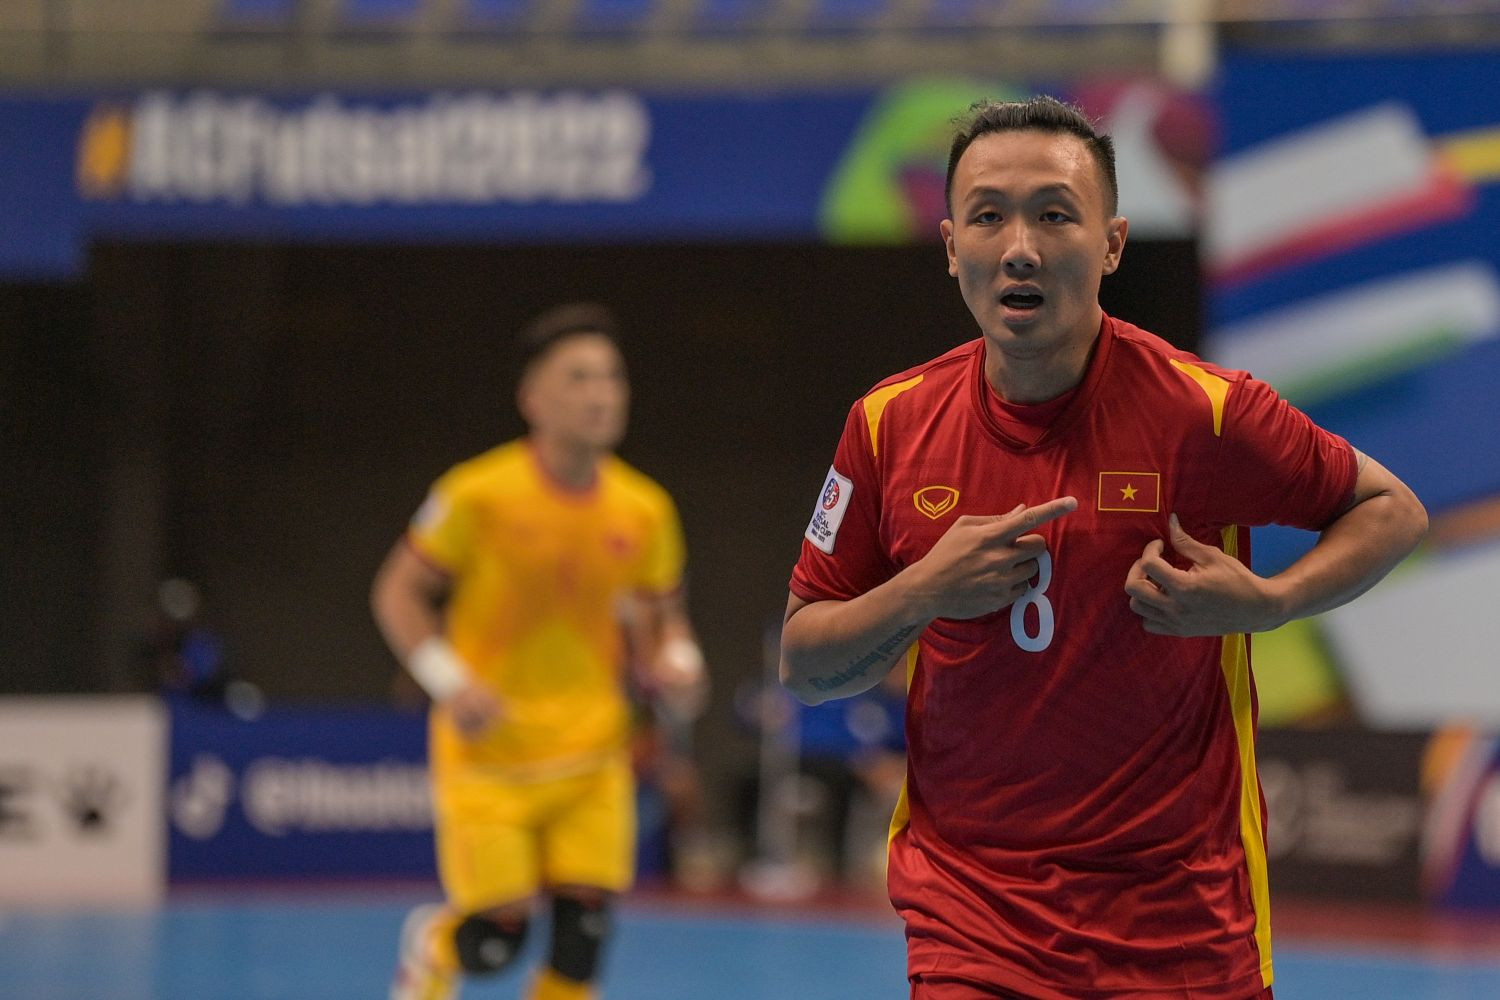 Lịch thi đấu của tuyển futsal Việt Nam tại VCK futsal châu Á 2022